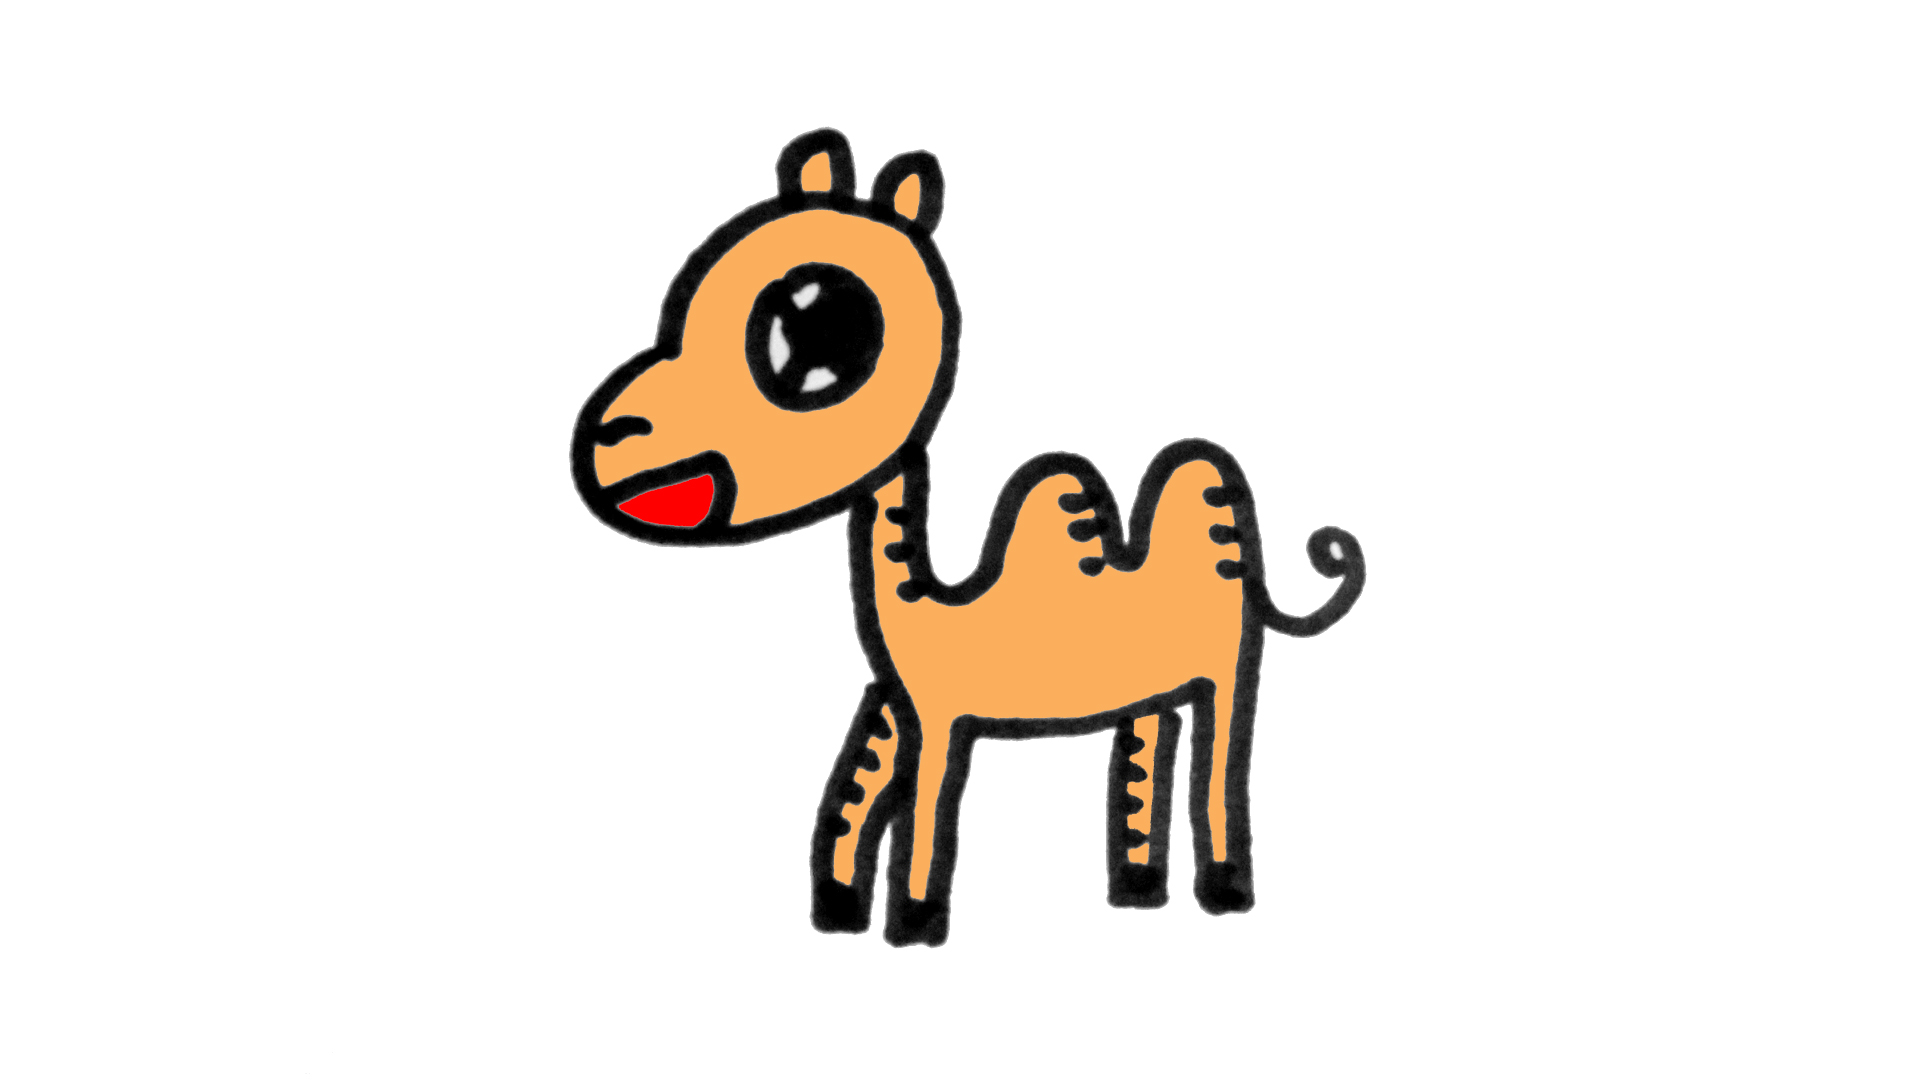 Bạn muốn học cách vẽ những con lạc đà cute và đáng yêu nhất? Đến với chúng tôi và bạn sẽ được hướng dẫn cách vẽ một chiếc lạc đà vô cùng dễ thương chỉ trong vài bước đơn giản. Hãy nhấn vào hình ảnh để bắt đầu chuyến hành trình tìm hiểu kỹ năng vẽ động vật nhé!